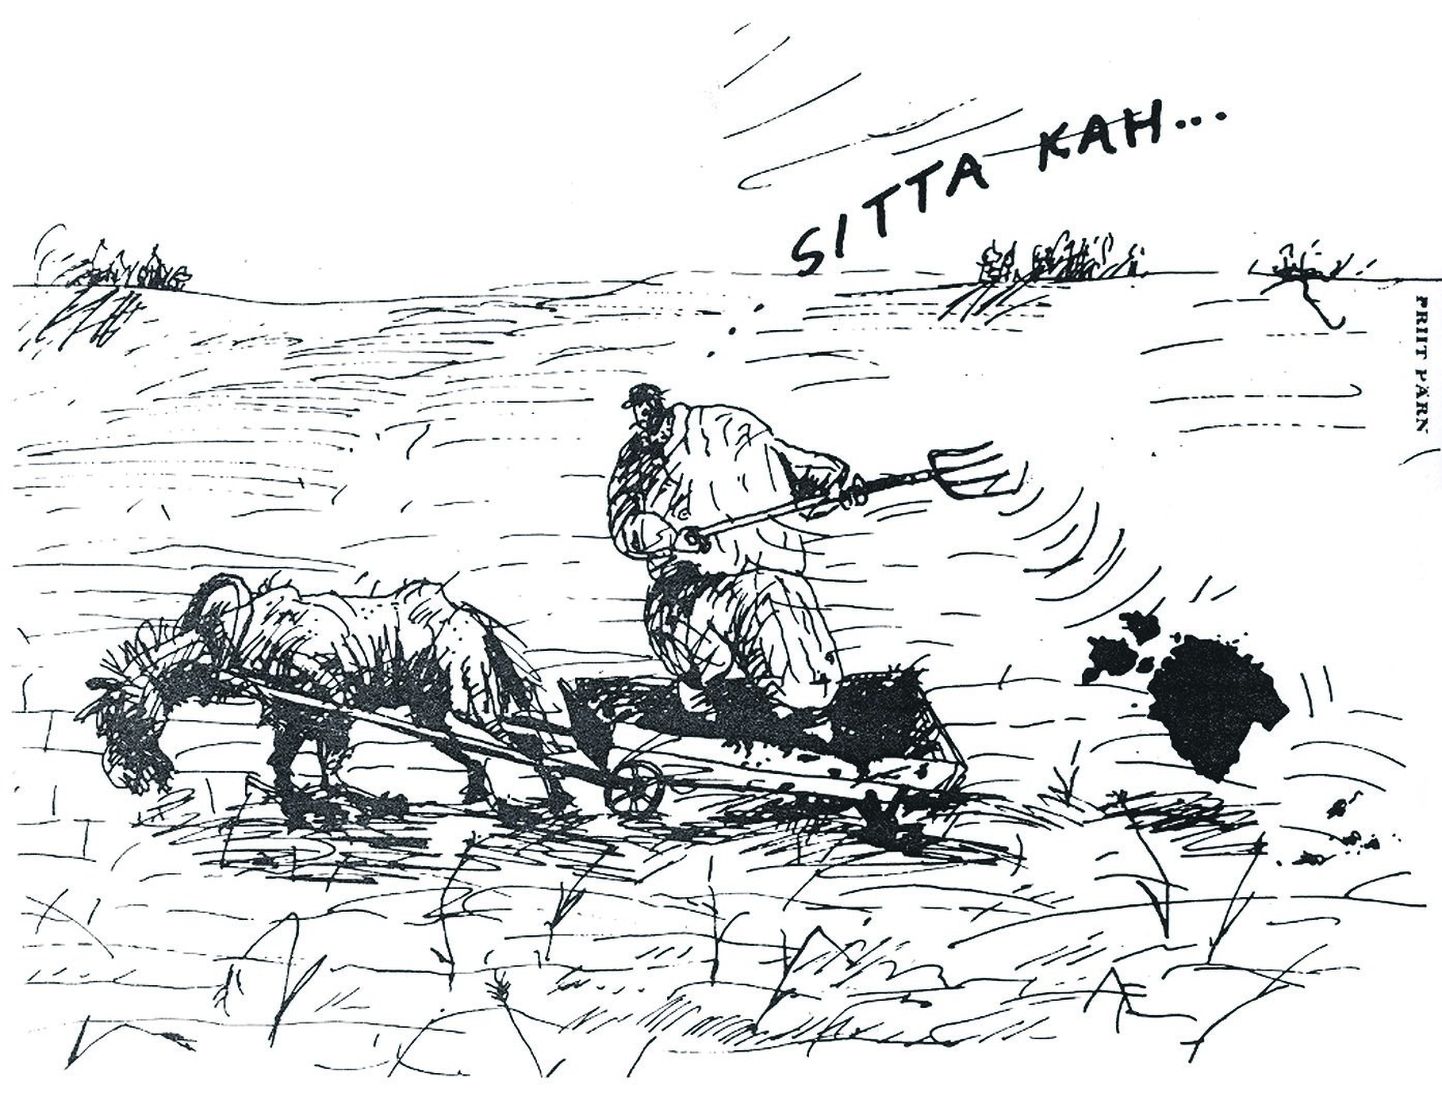 Priit Pärna karikatuur «Sitta kah!», mis ilmus 1987. aasta 8. mail kultuurilehes Sirp ja Vasar.